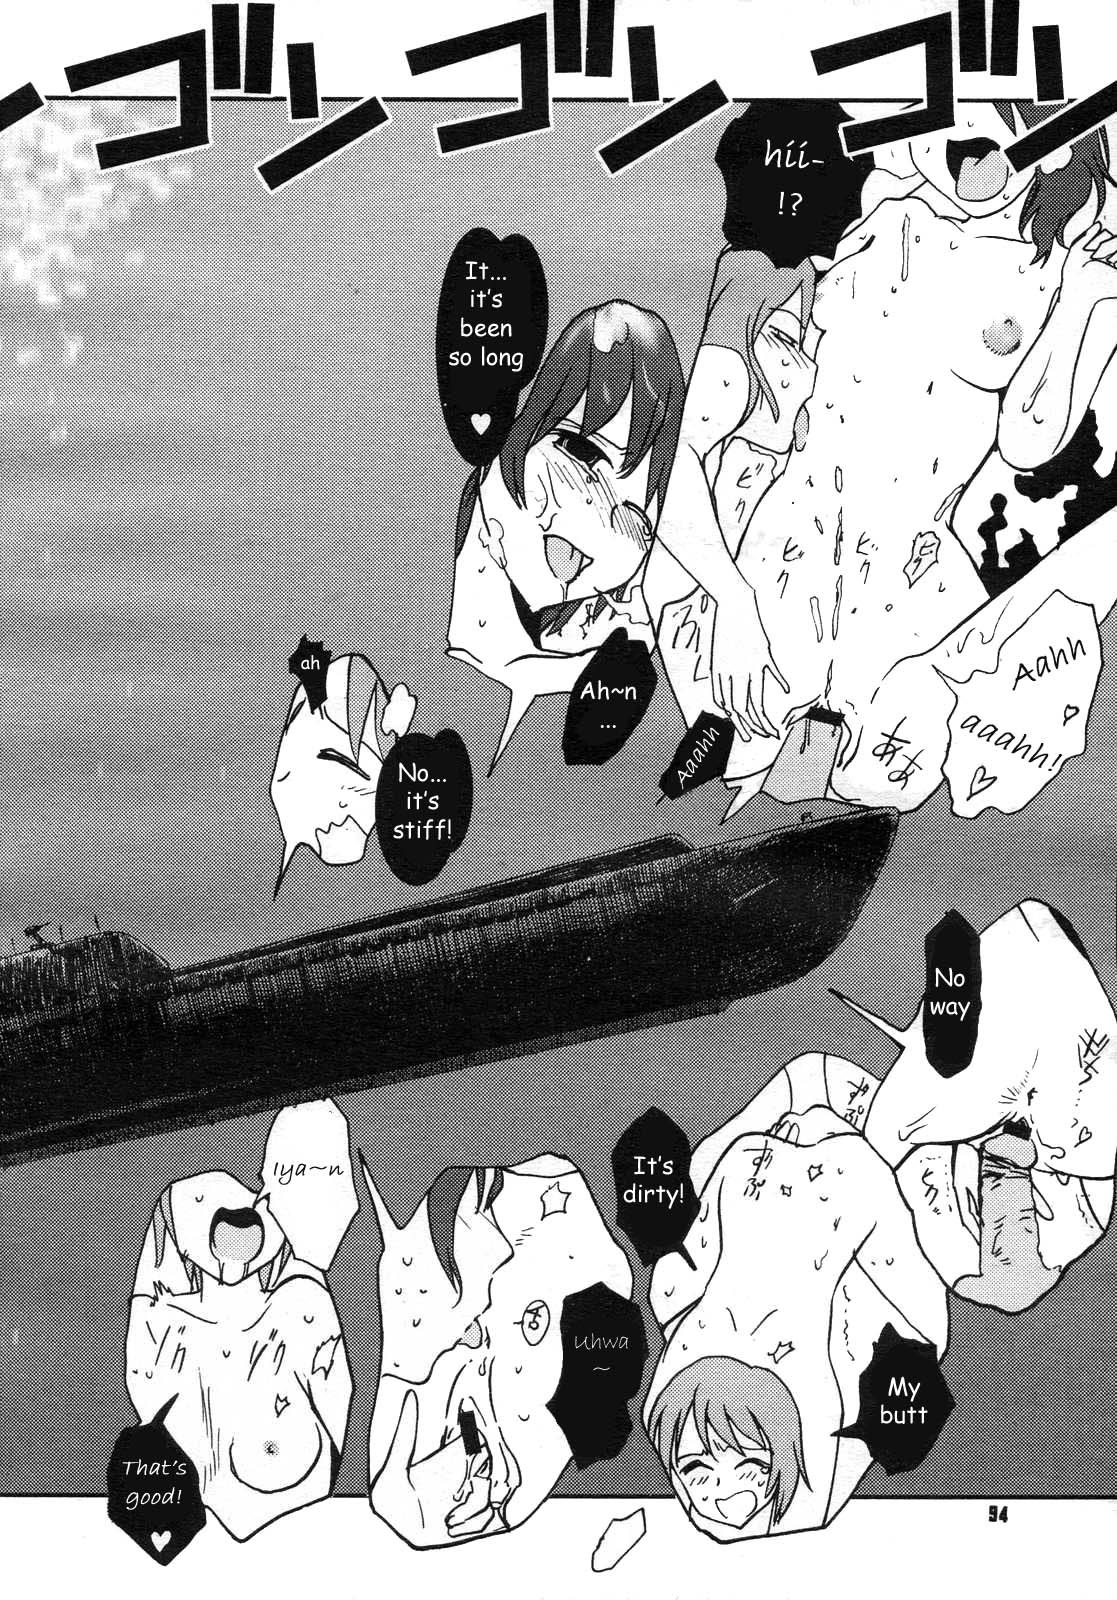 Mitsumei a.k.a. I-404 15 hentai manga